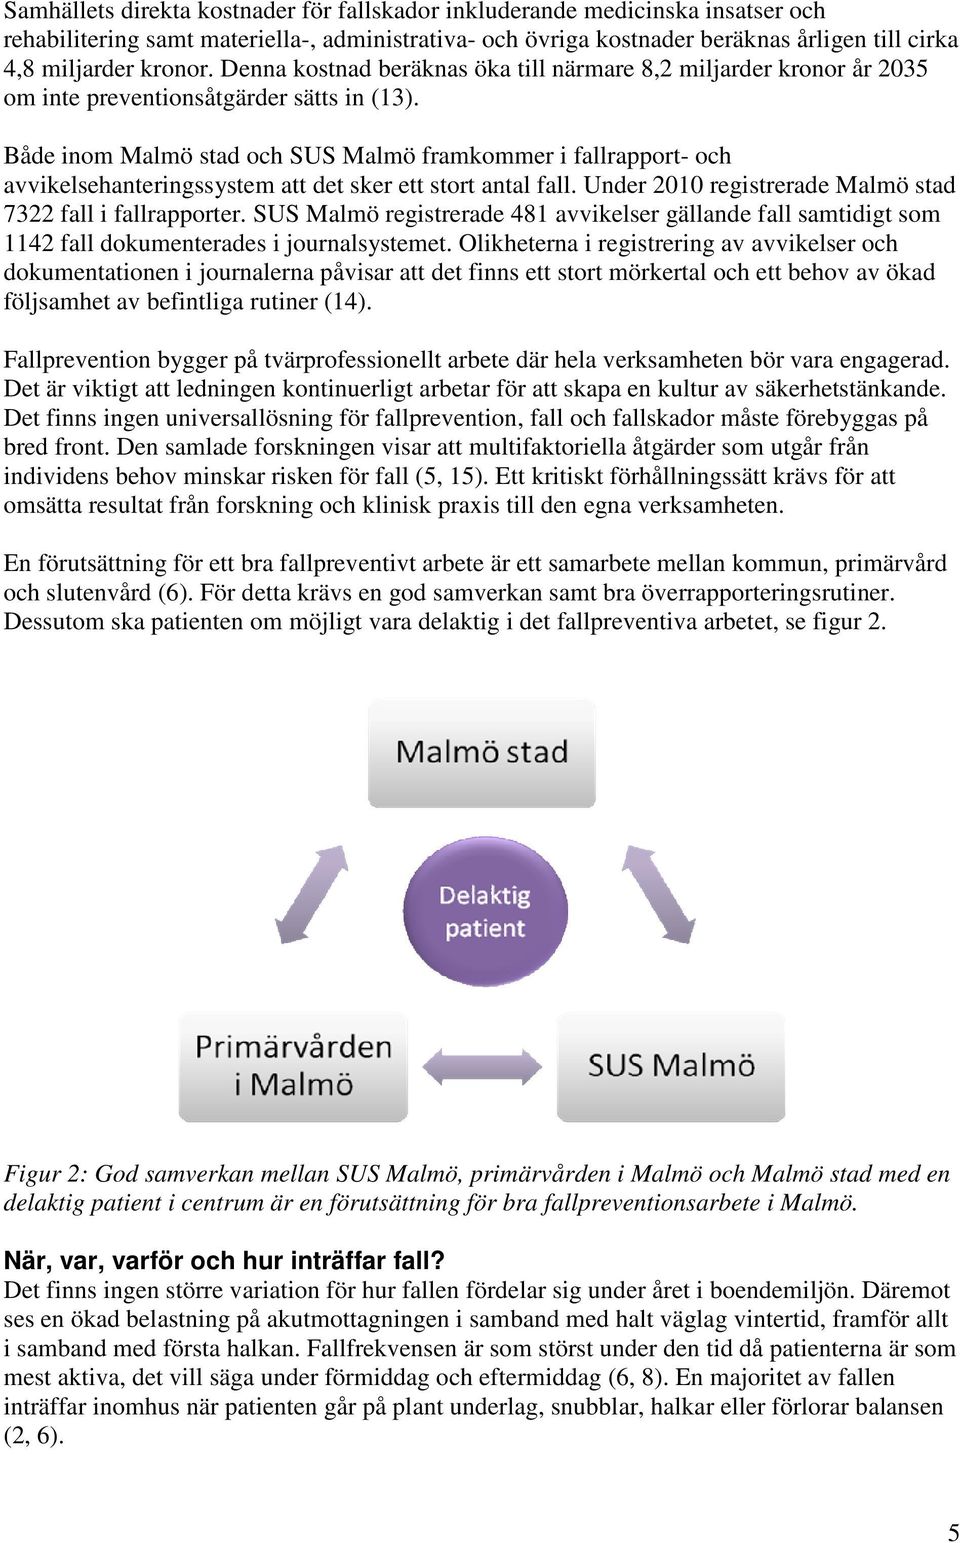 Både inom Malmö stad och SUS Malmö framkommer i fallrapport- och avvikelsehanteringssystem att det sker ett stort antal fall. Under 2010 registrerade Malmö stad 7322 fall i fallrapporter.